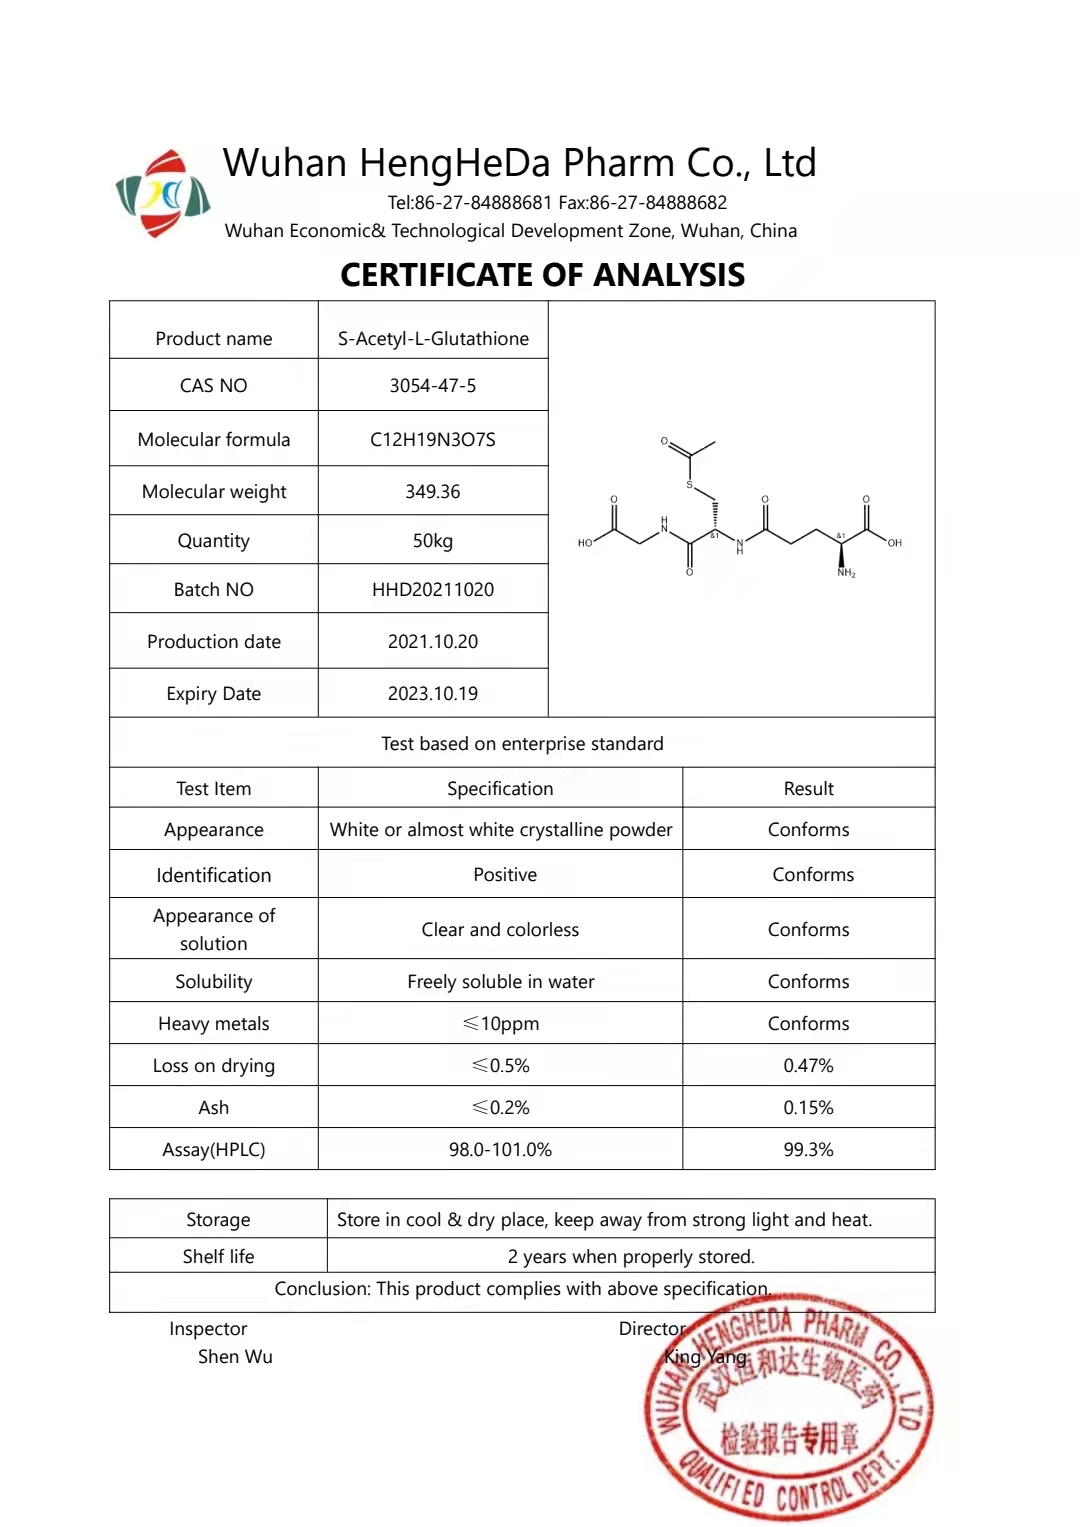 Kaufen S-Acetylglutathion CAS 3054-47-5;S-Acetylglutathion CAS 3054-47-5 Preis;S-Acetylglutathion CAS 3054-47-5 Marken;S-Acetylglutathion CAS 3054-47-5 Hersteller;S-Acetylglutathion CAS 3054-47-5 Zitat;S-Acetylglutathion CAS 3054-47-5 Unternehmen